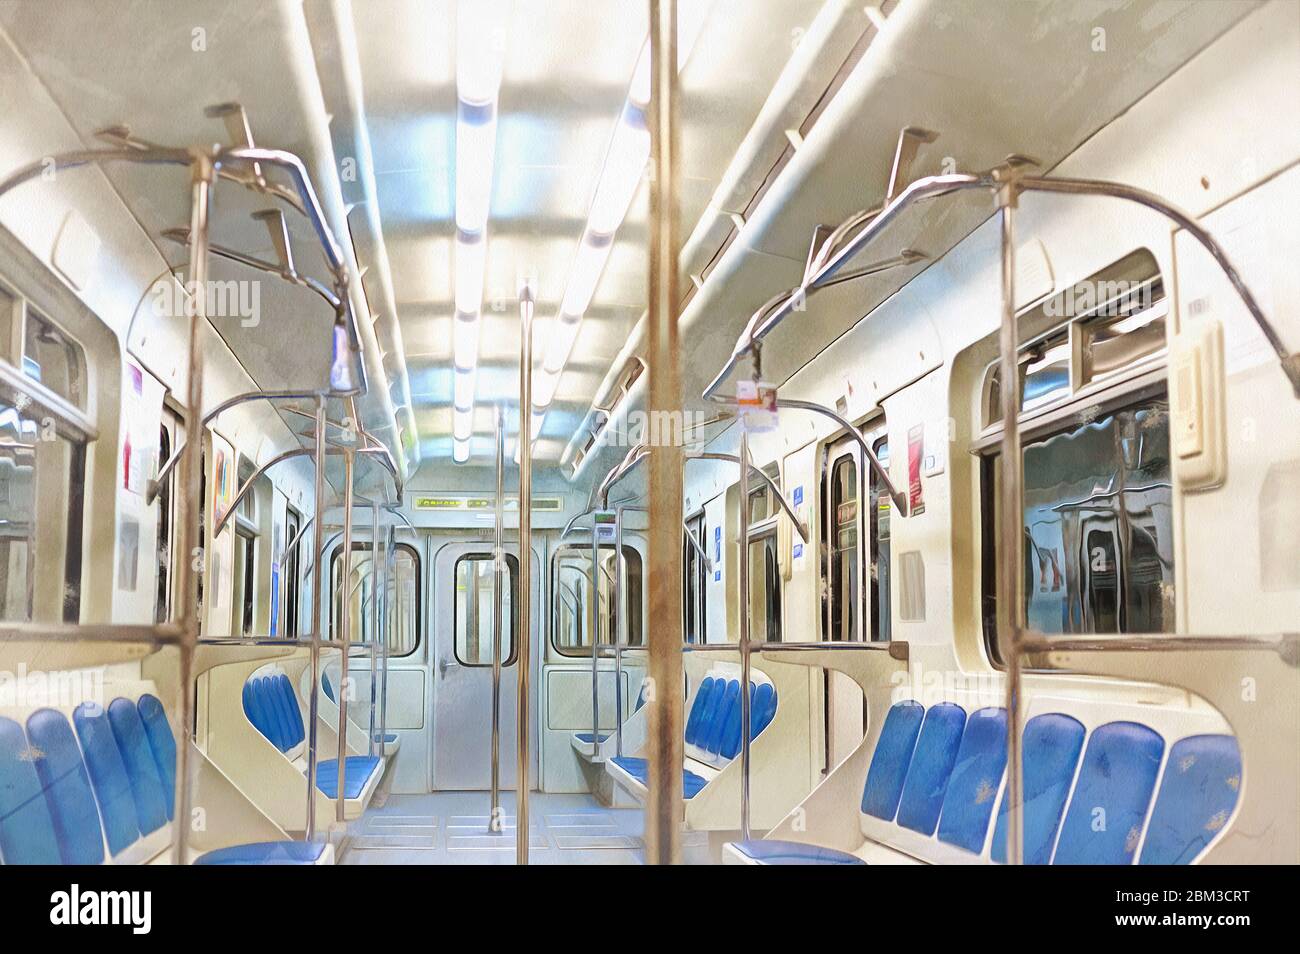 Vue sur l'intérieur du métro peinture colorée ressemble à l'image Banque D'Images